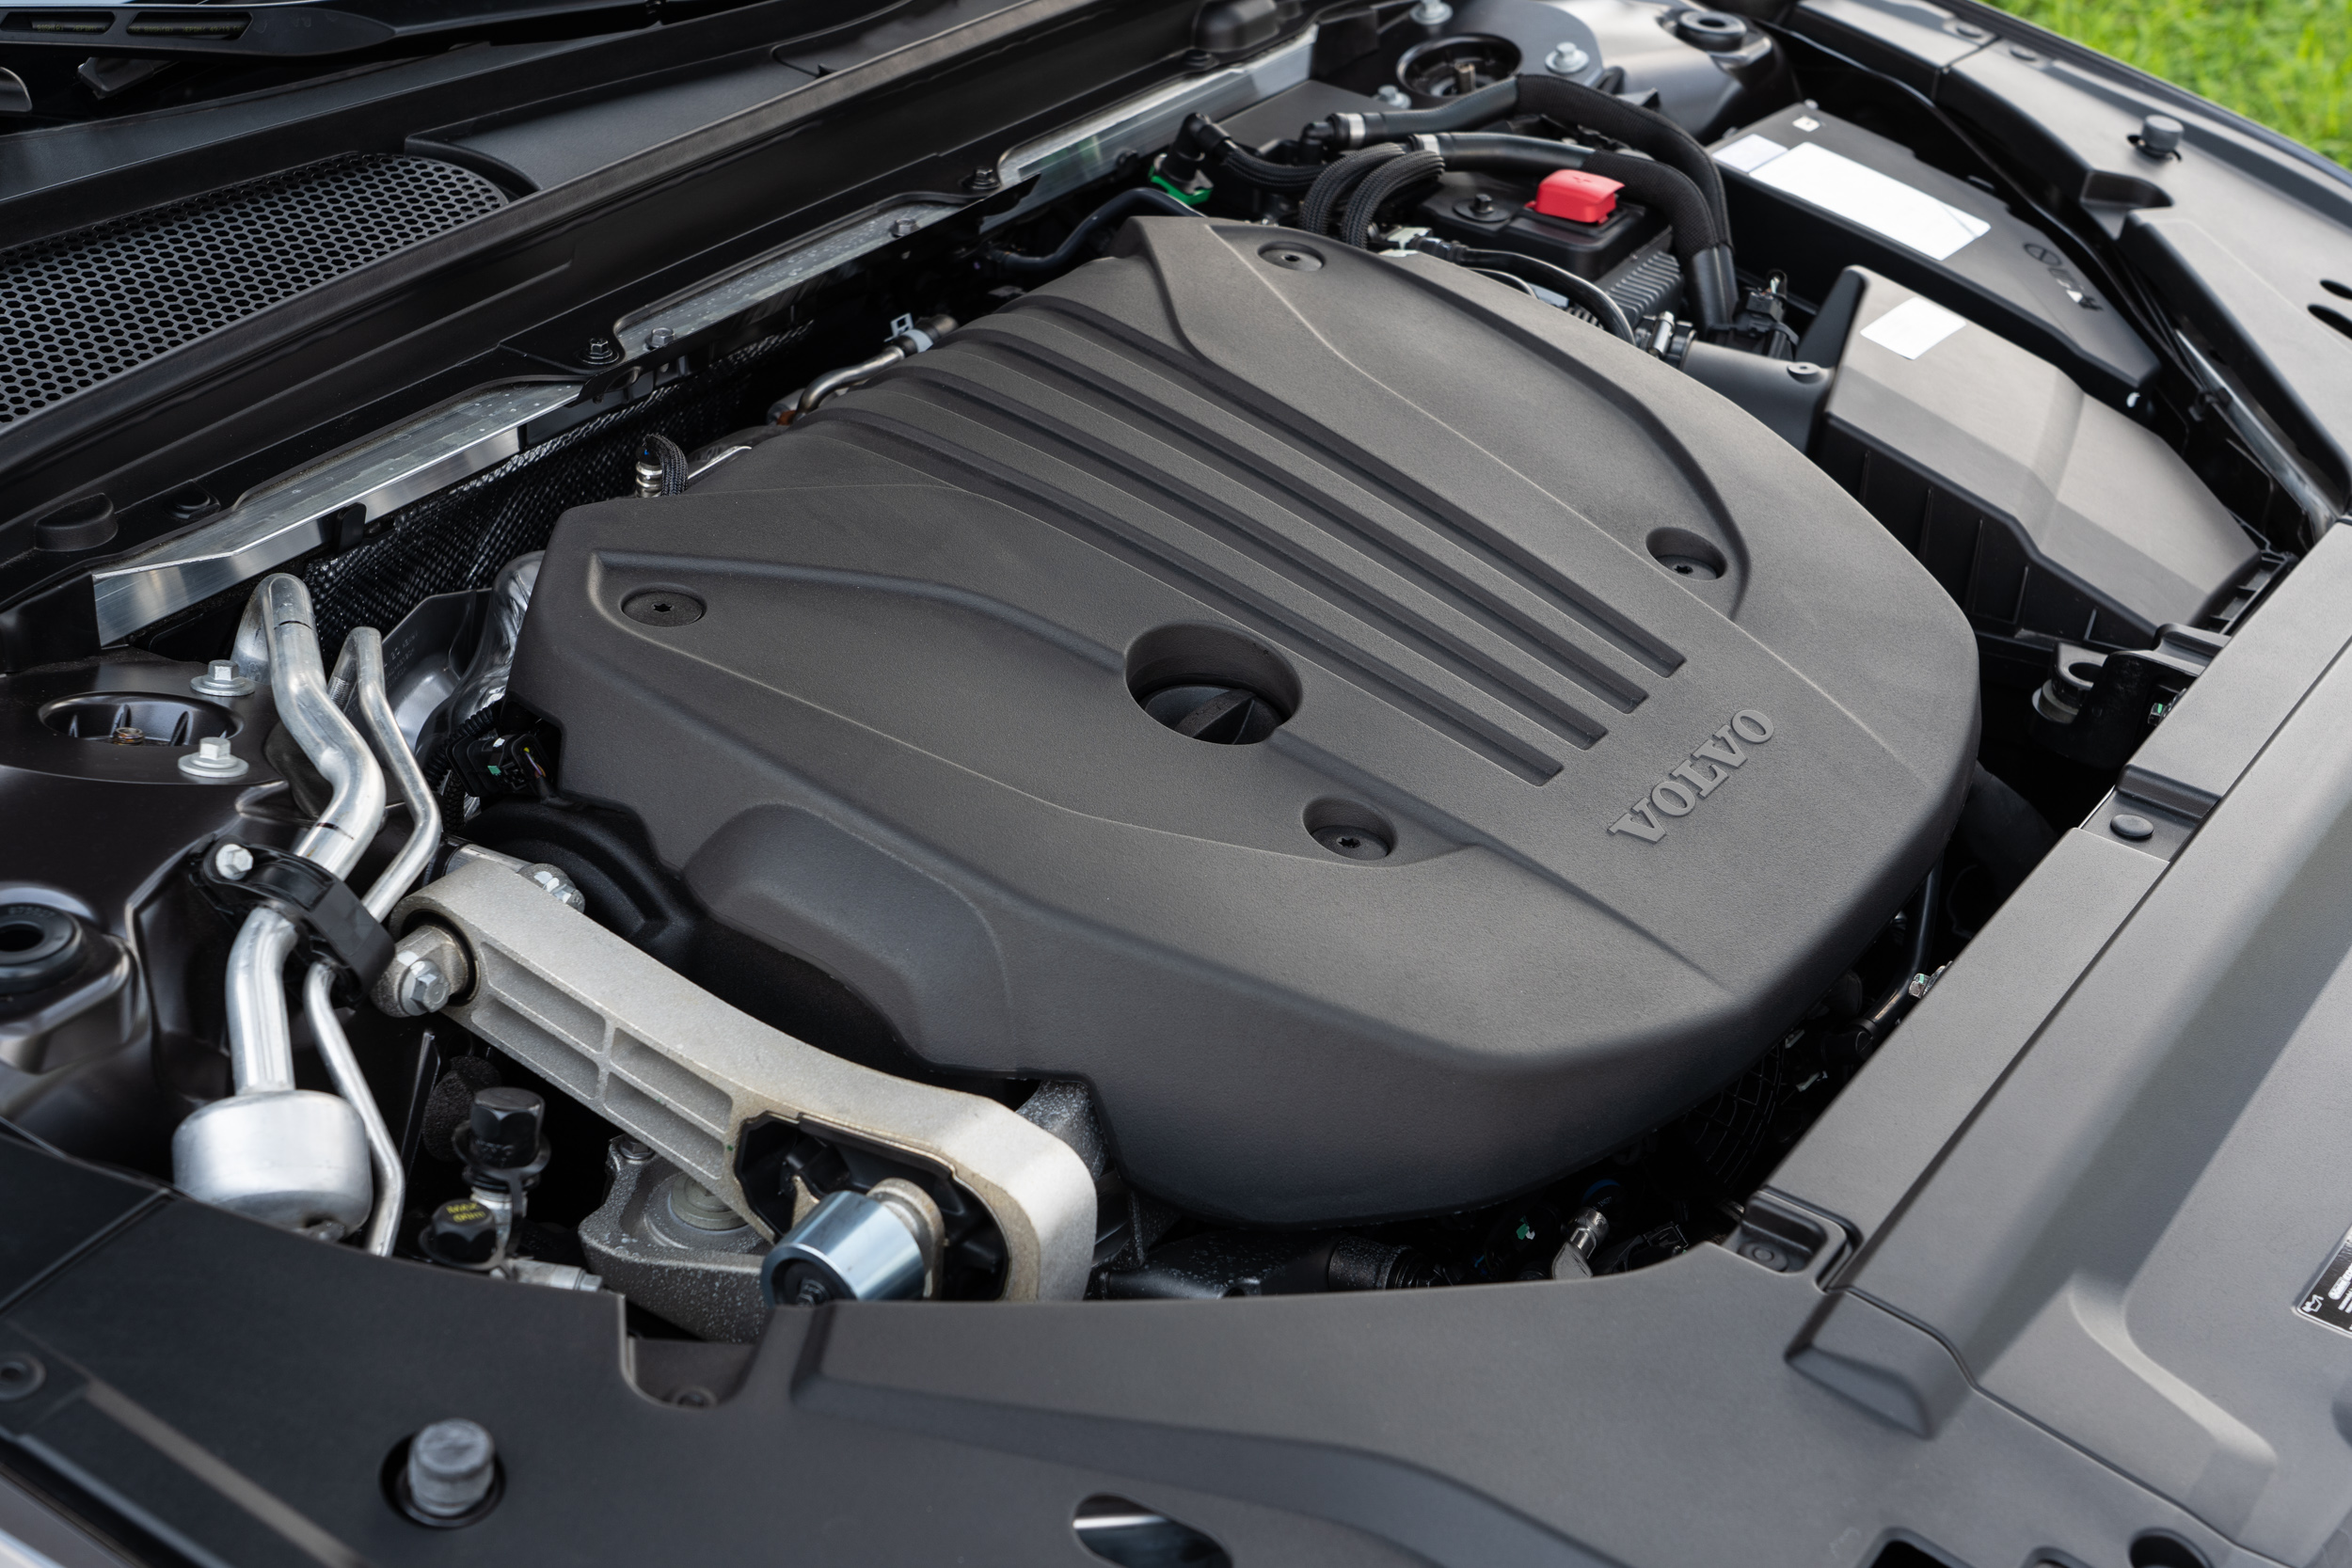 搭載第三代 Drive-E 動力系統， 具備 48V 輕油電科技，除了 197hp / 4800~5400rpm 最大馬力與 30.6kgm / 1500~4200rpm 最大扭力以外，另外可獲得輕油電系統額外提供的 14hp 馬力助益。